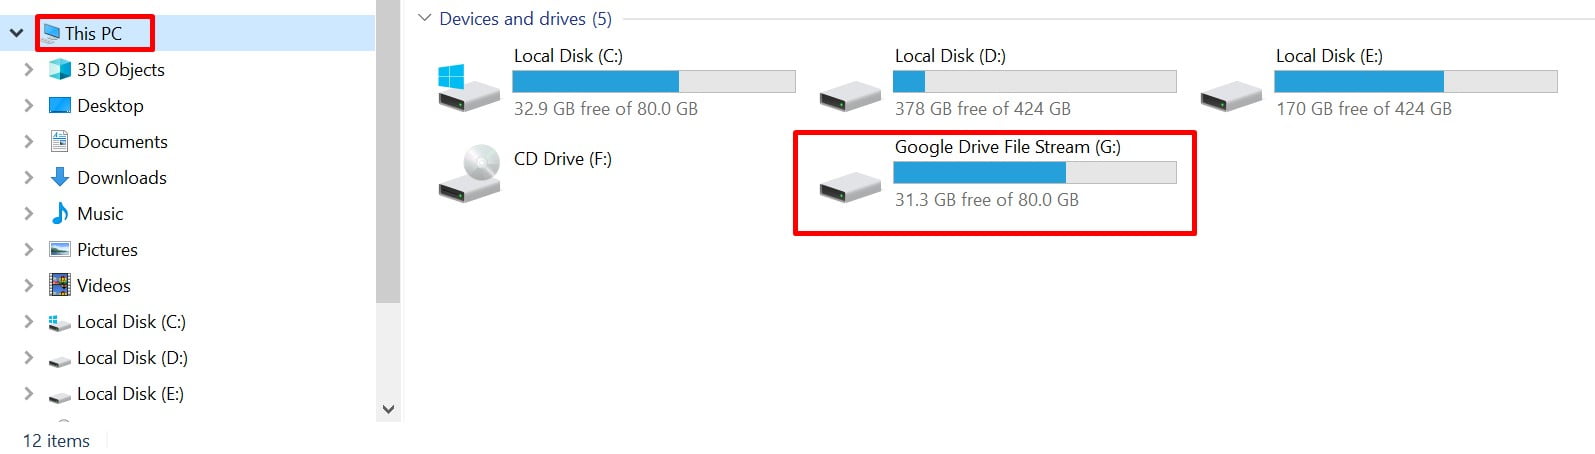 Google Drive File Stream là gì? Cách tạo ổ đĩa ảo bằng cài đặt Google Drive File Stream 13